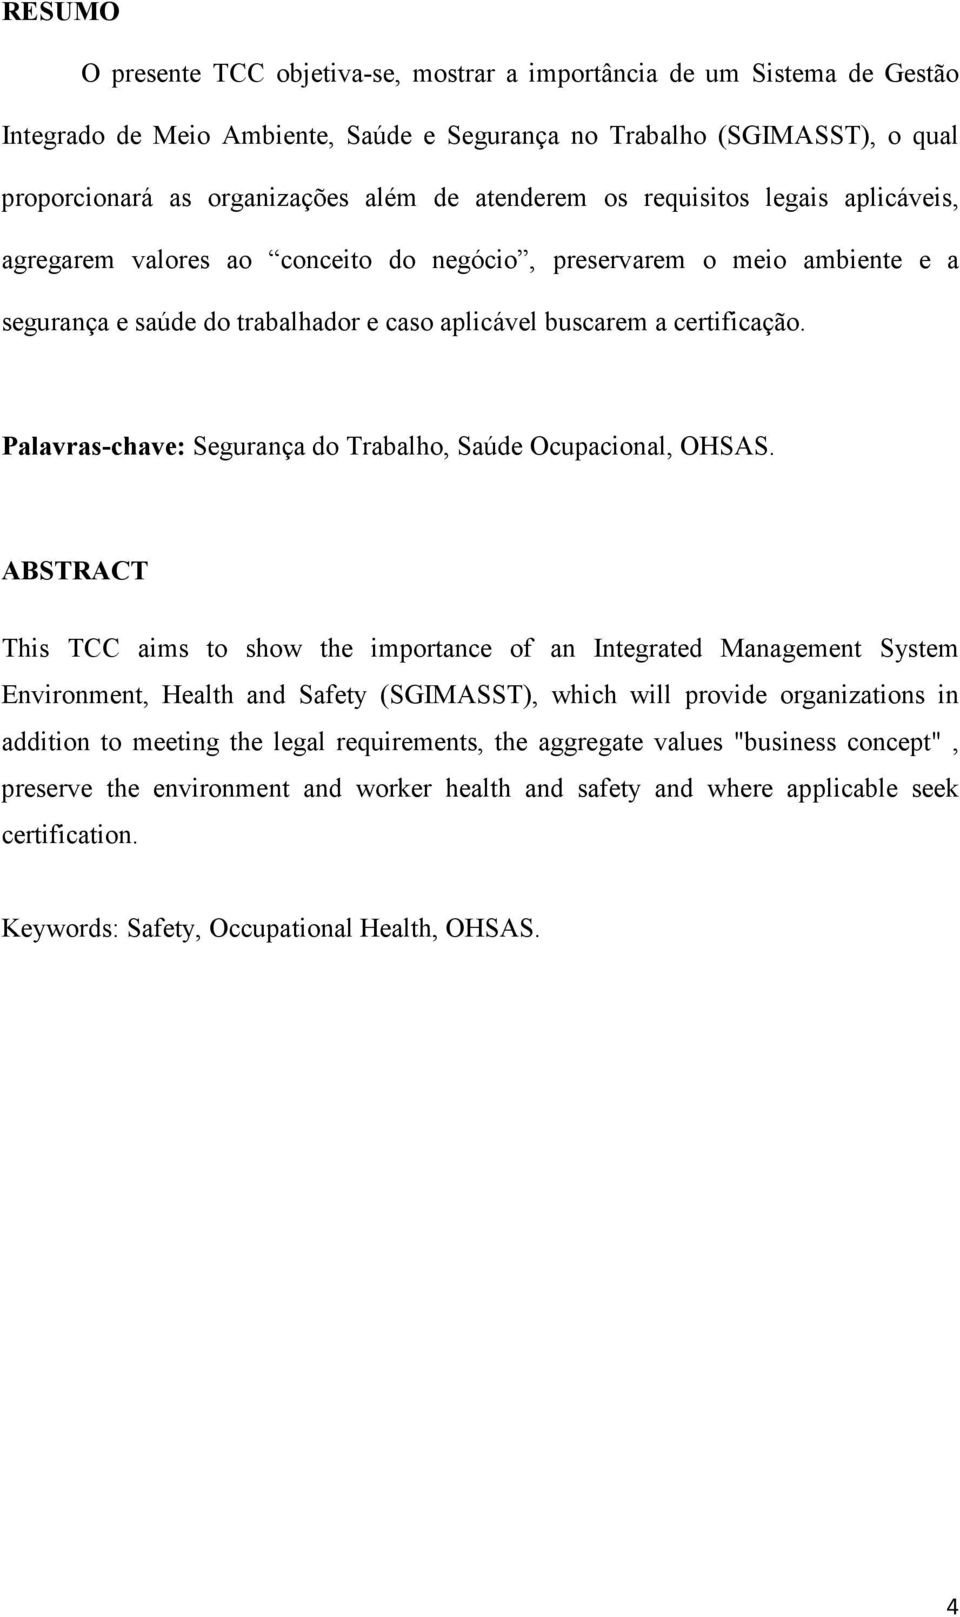 Palavras-chave: Segurança do Trabalho, Saúde Ocupacional, OHSAS.